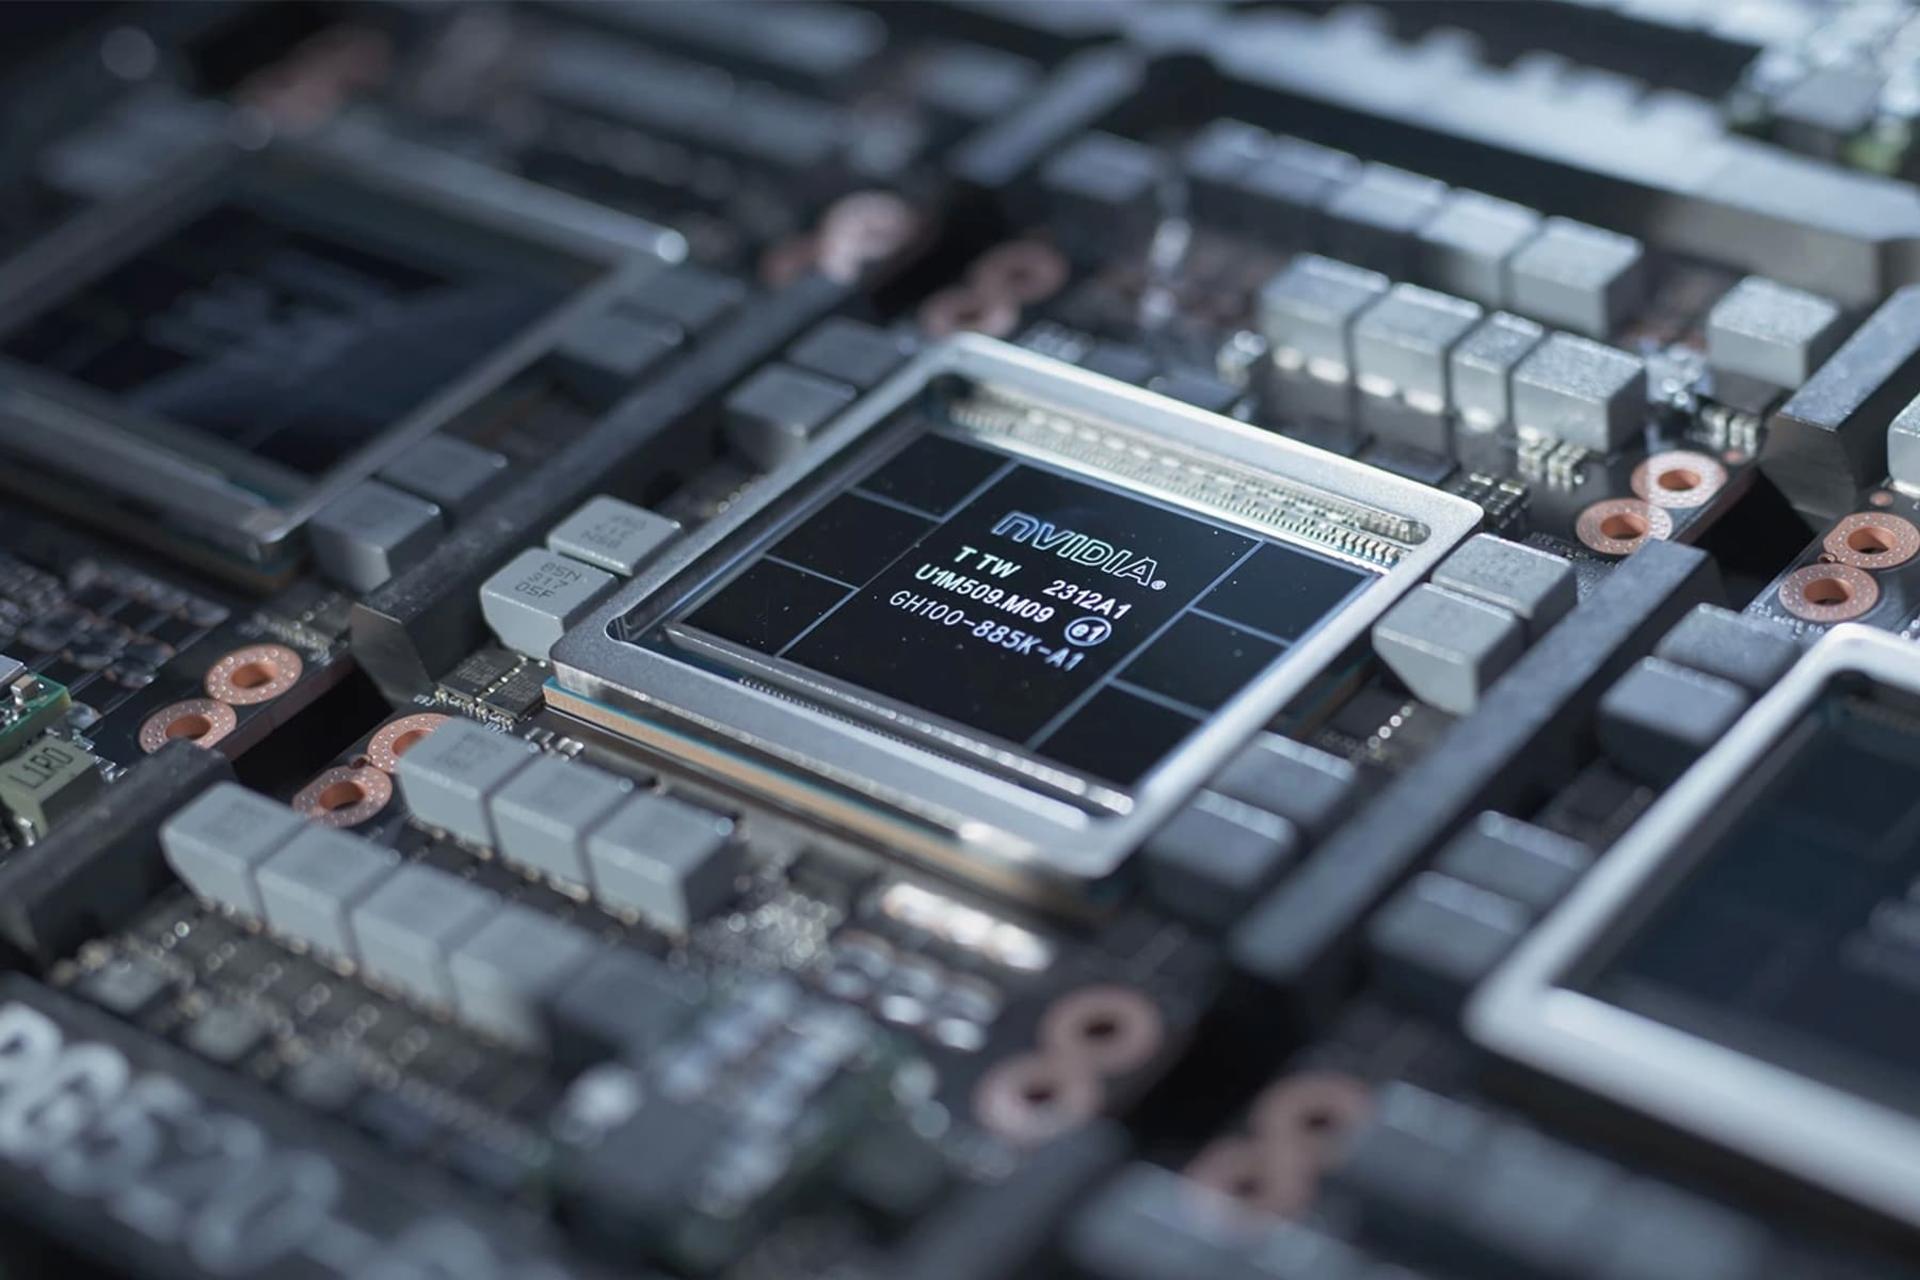 مرجع متخصصين ايران لوگو انويديا / Nvidia روي پردازنده تراشه مشكي در داخل سيستم